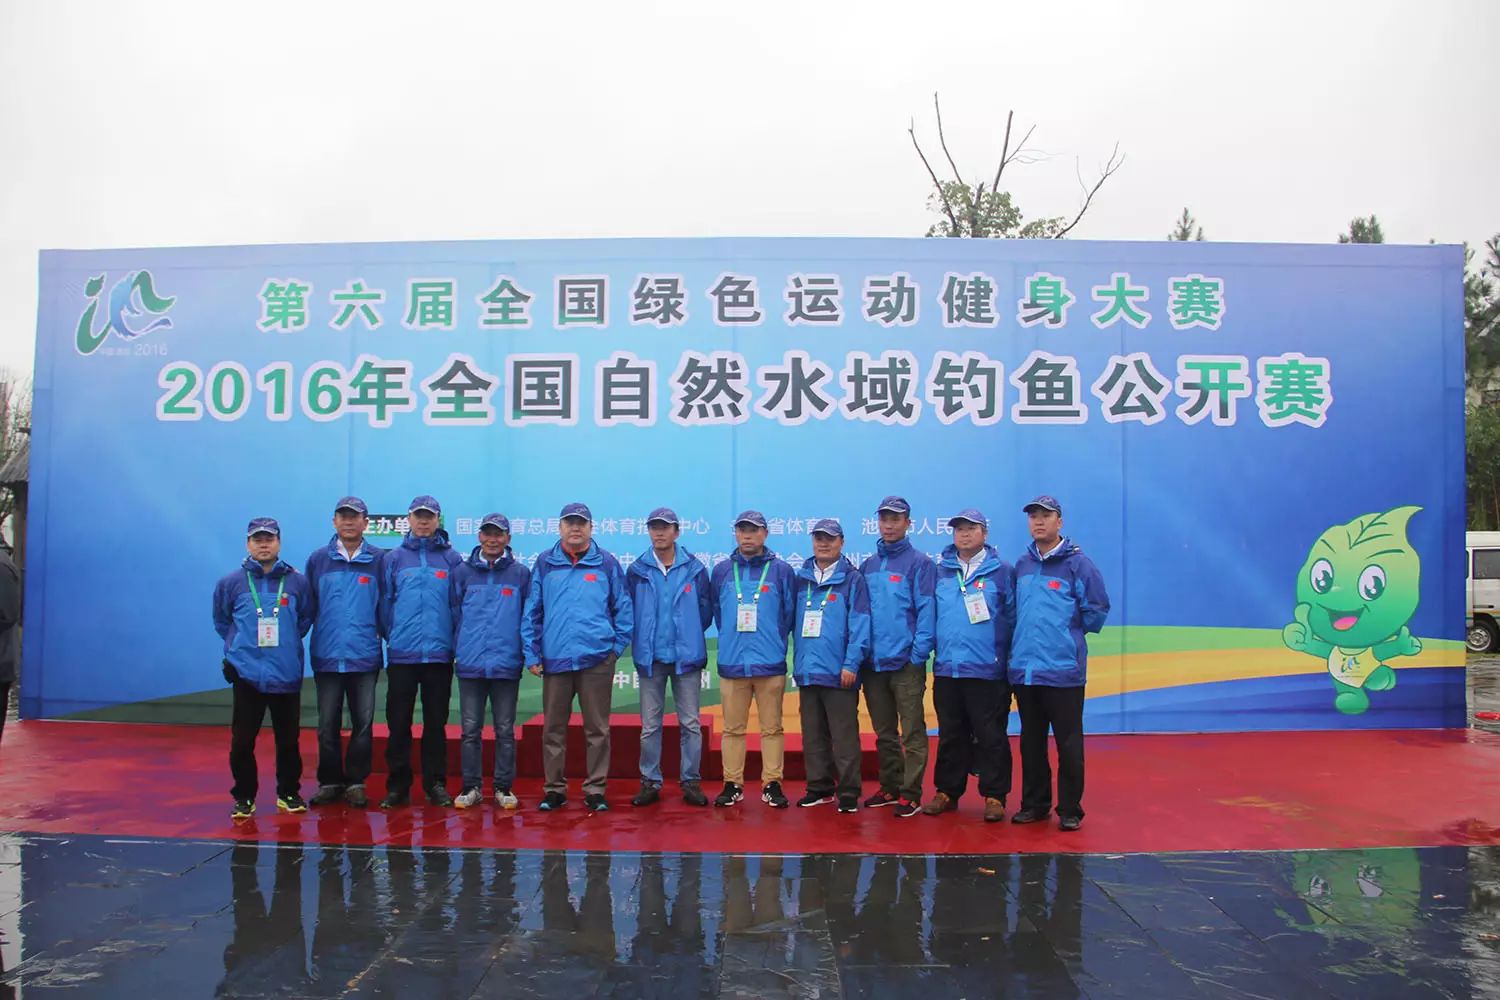 2016中国·池州第六届全国绿色运动健身大赛‖钓鱼公开赛圆满落幕啦